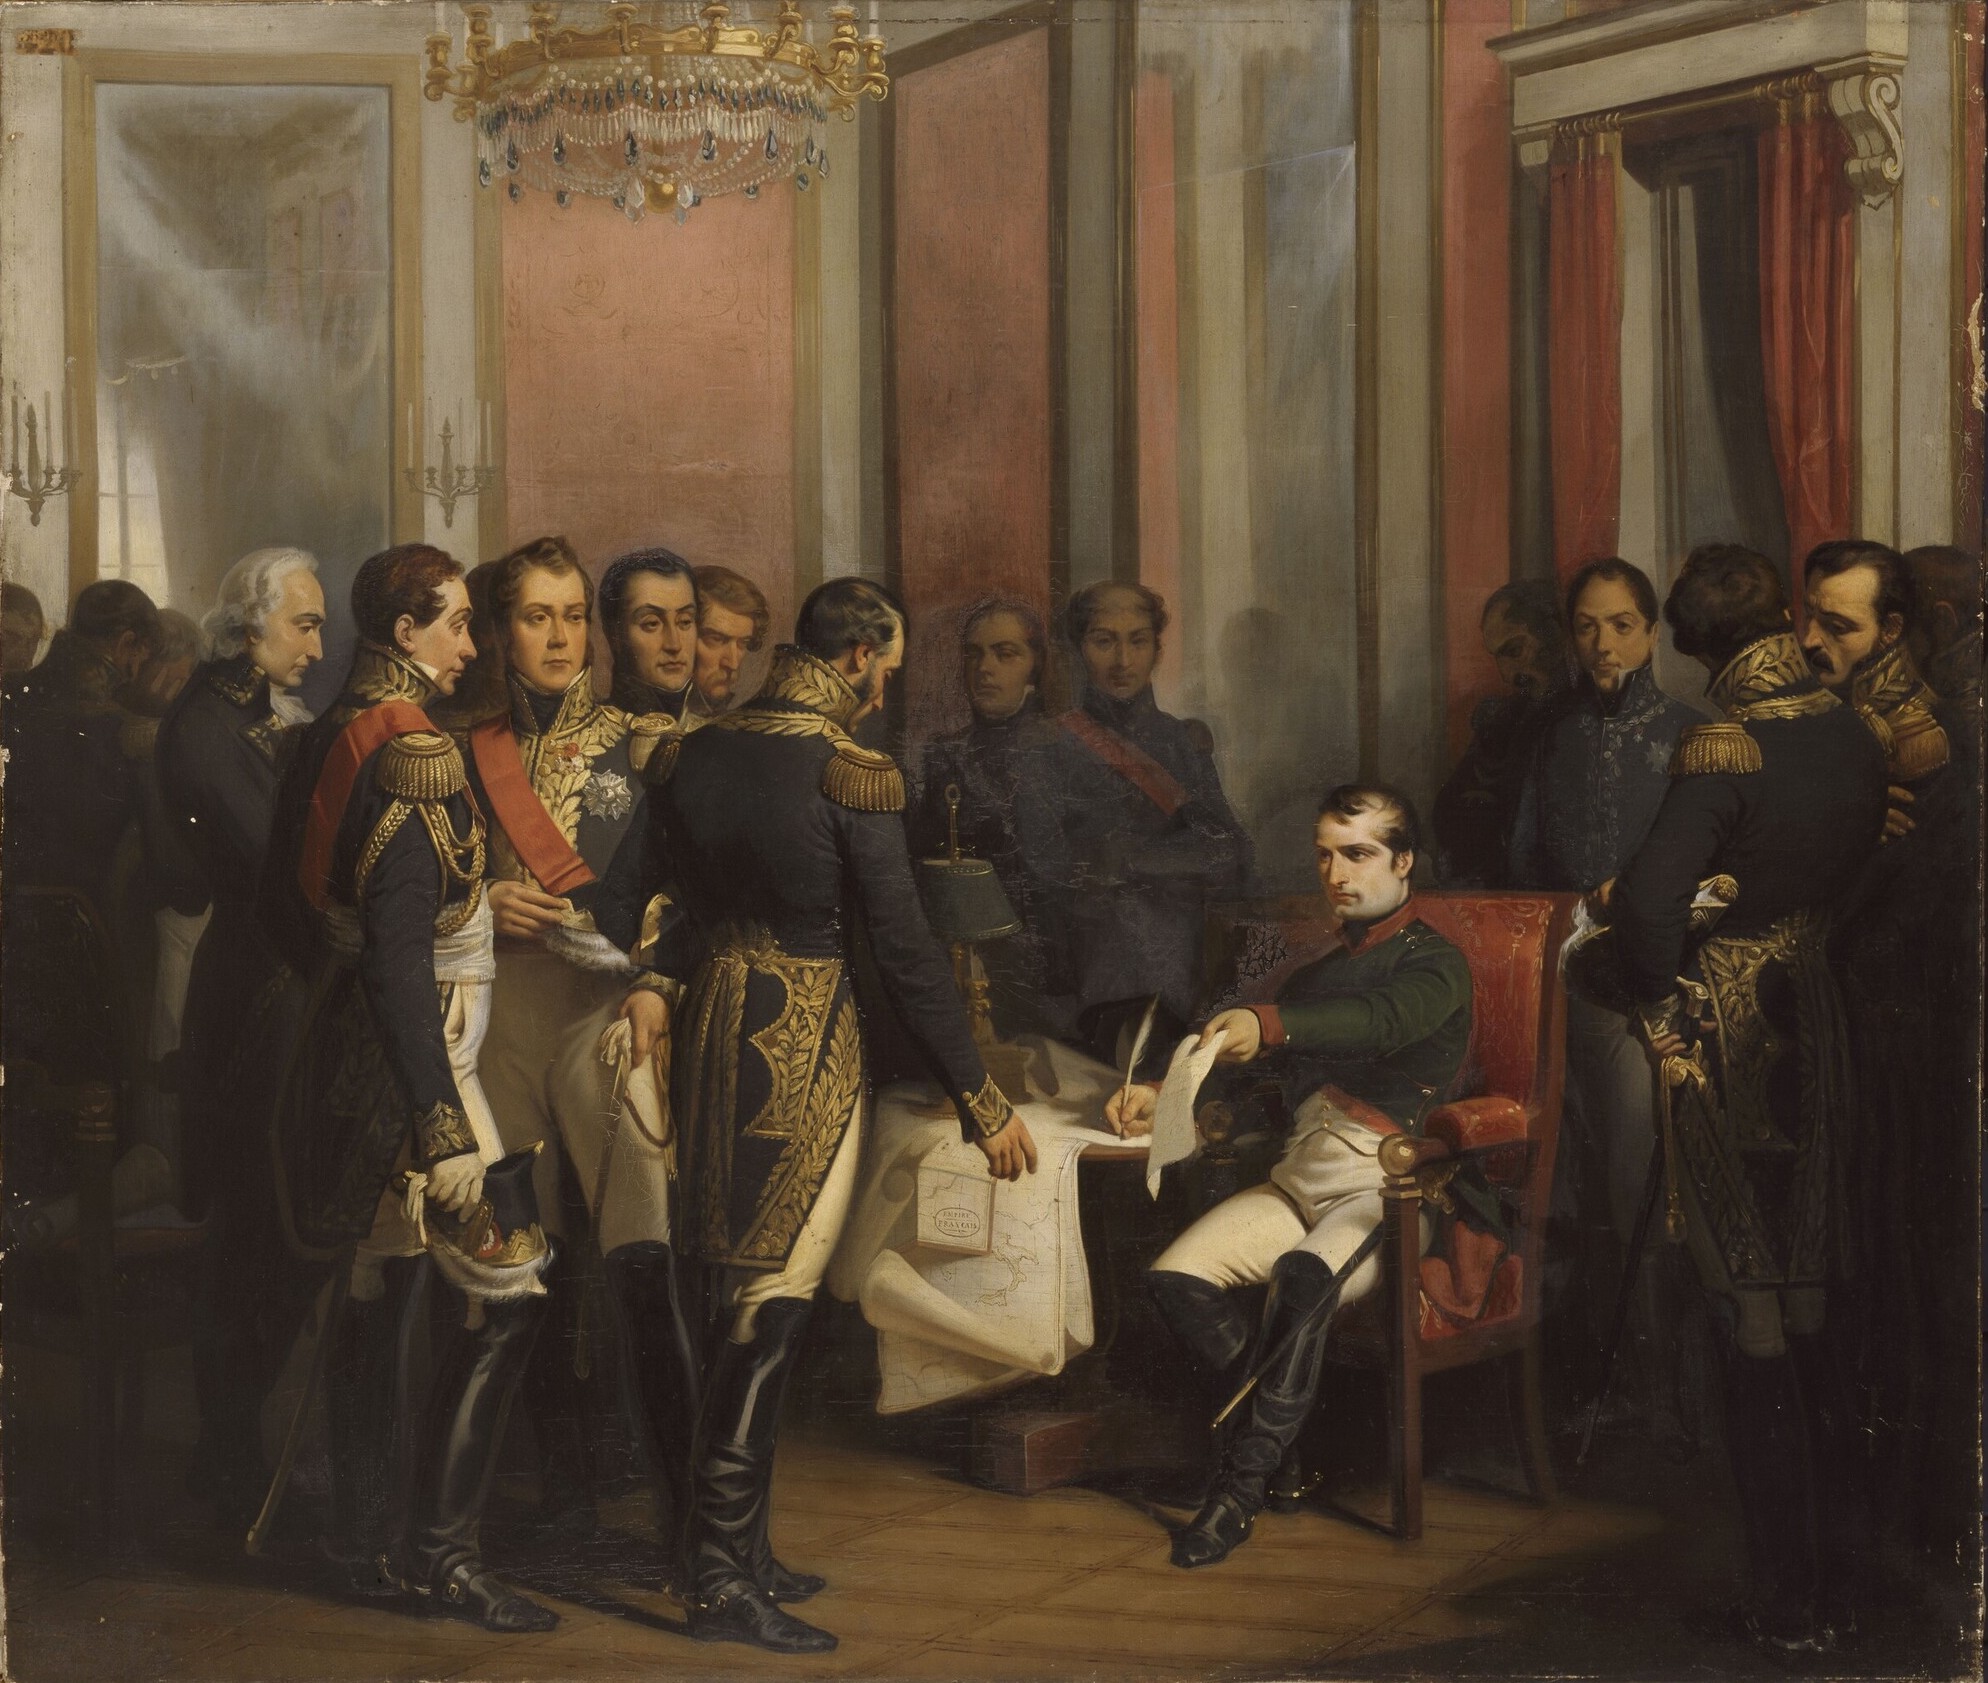 Napoleon abdicates